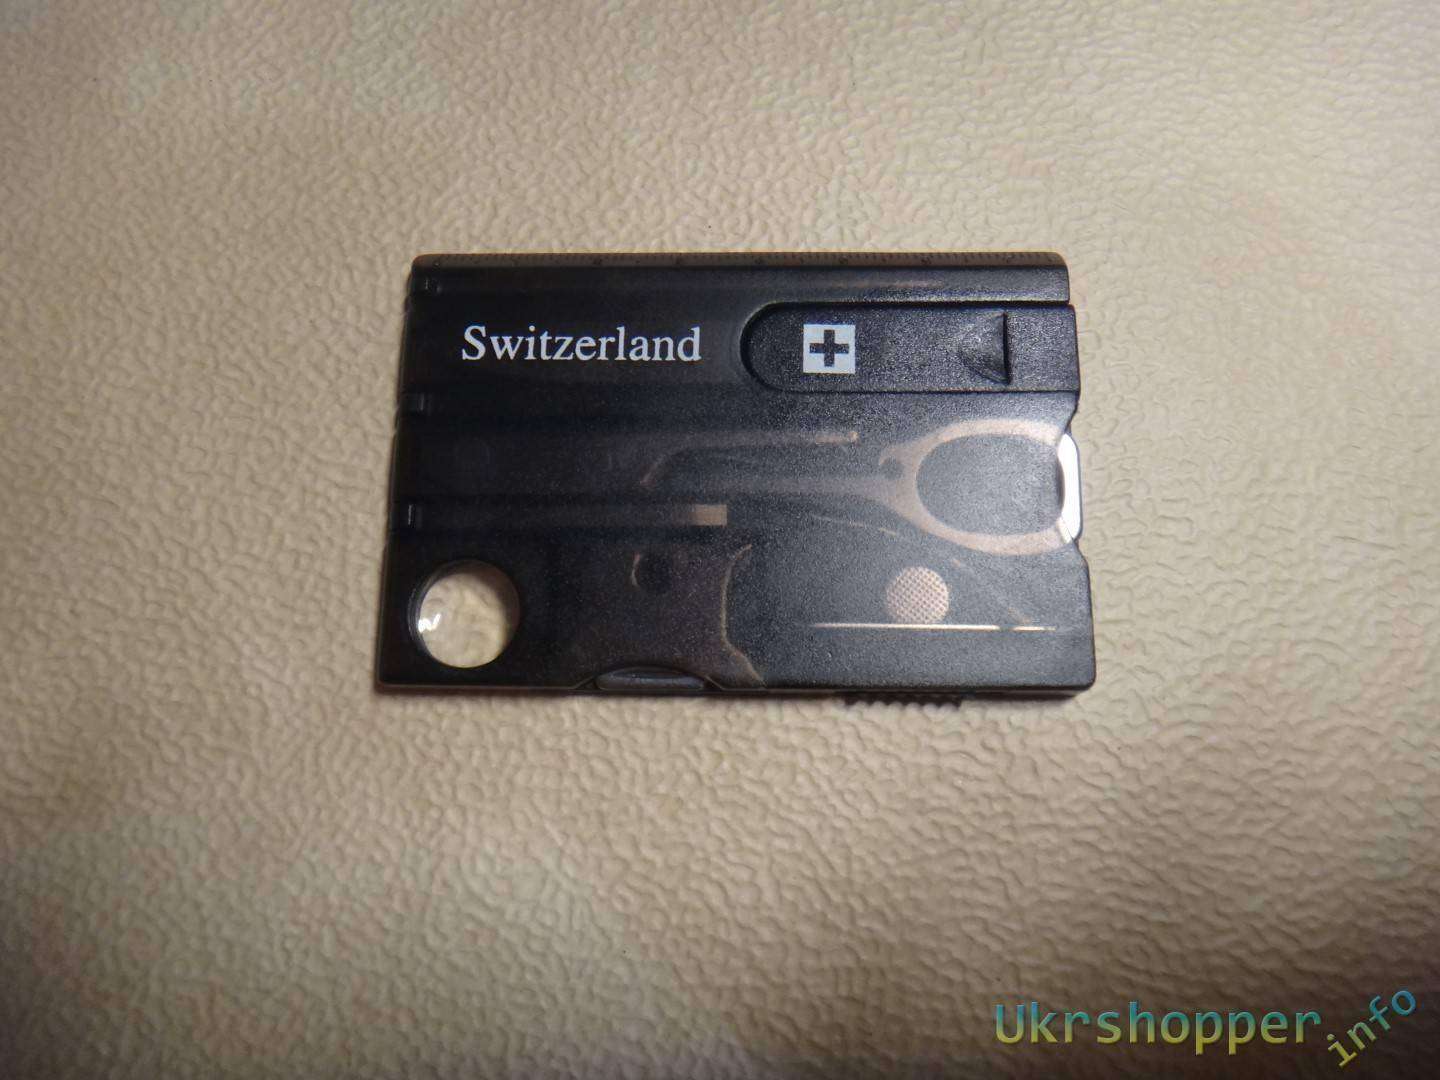 Banggood: Швейцарская кредитка мультитул или набор инструментов в кошельке